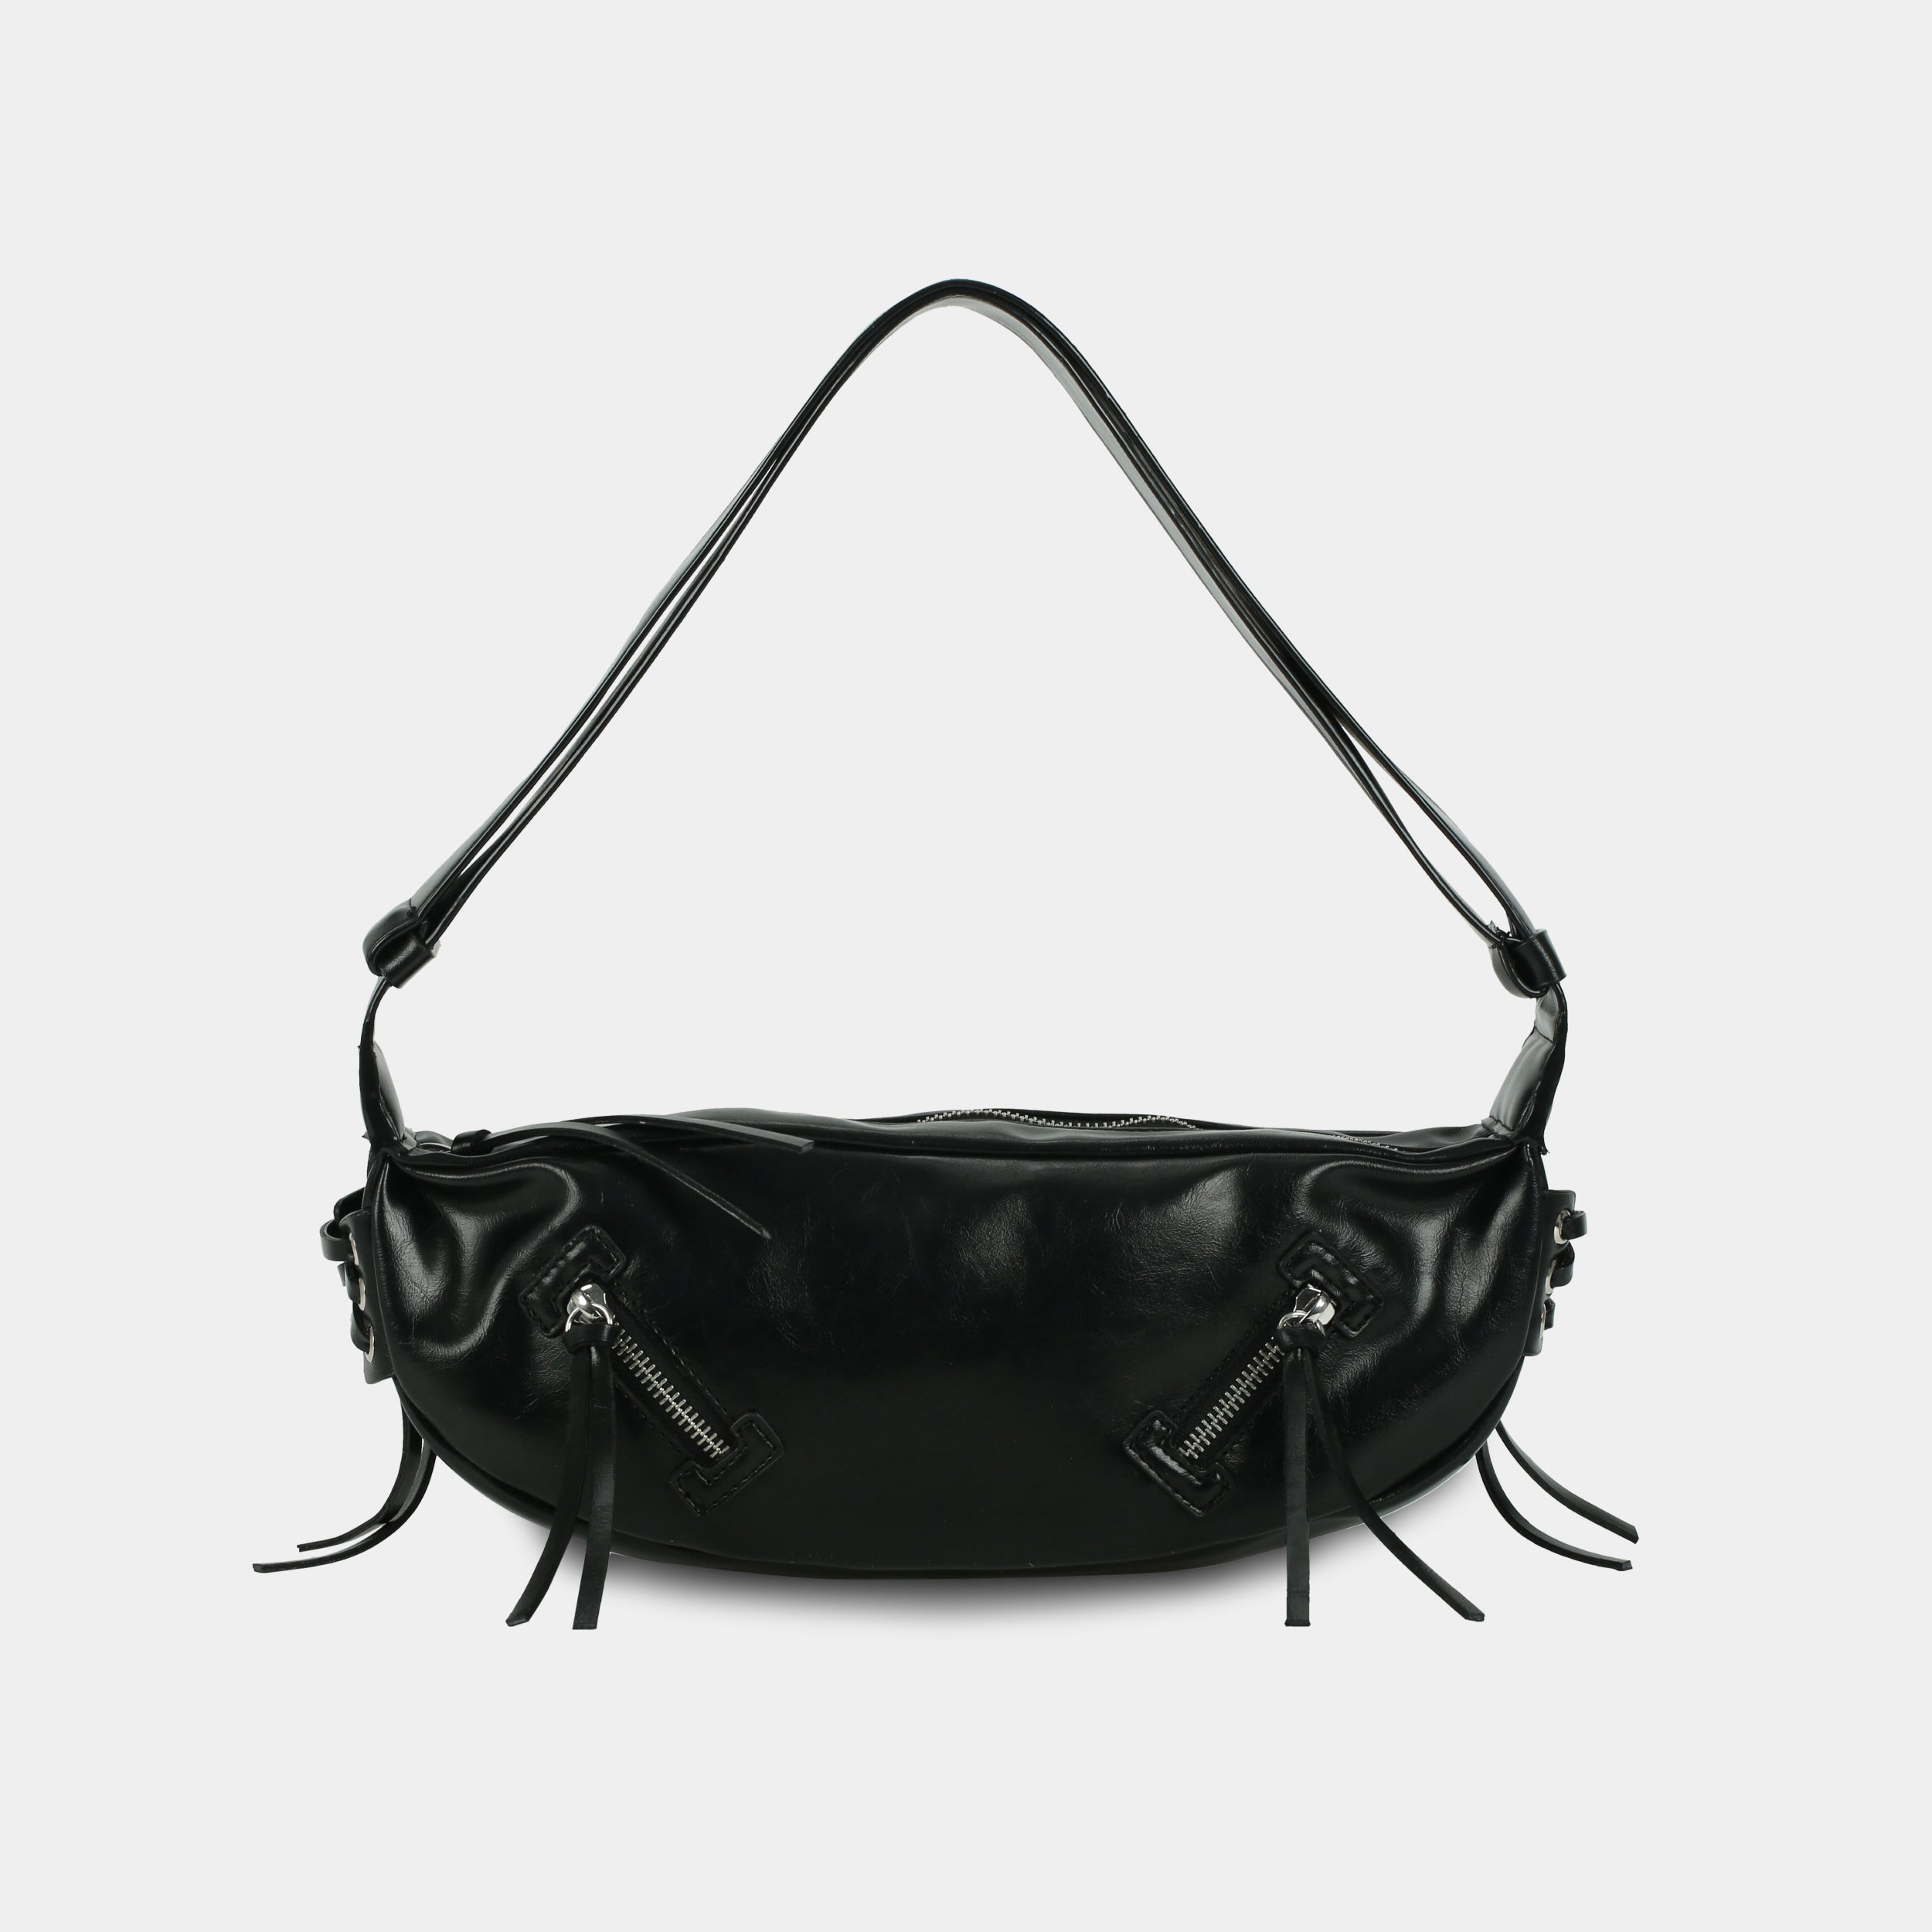 LACE bag large size (M) black